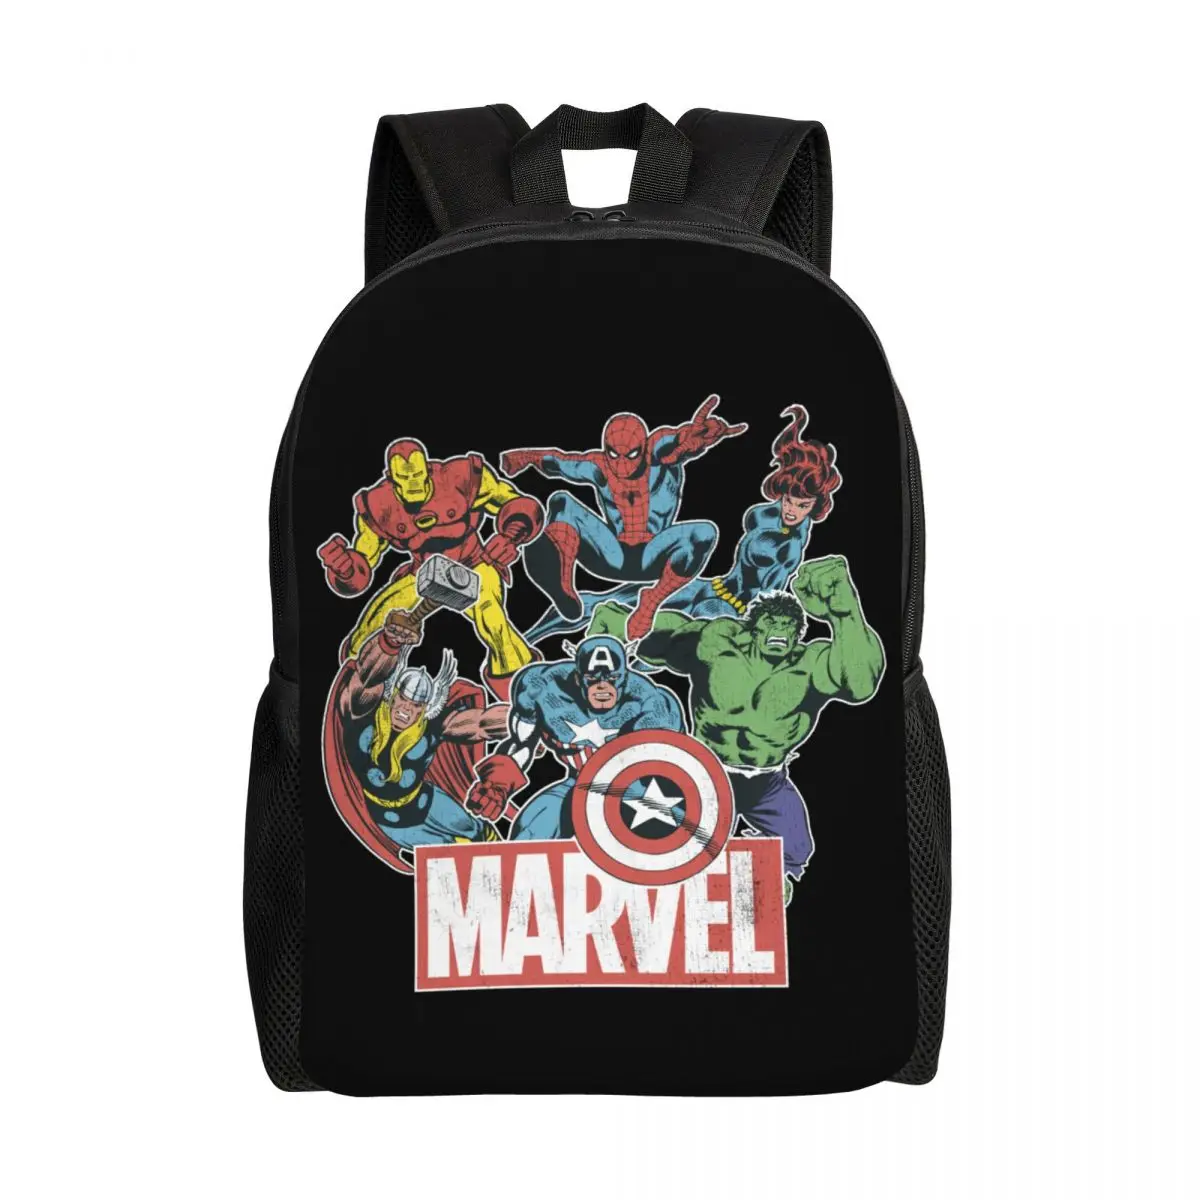 

Custom Marvel Hulk Classic Avengers Backpack for Women Men Water Resistant School College Bag Printing Bookbags